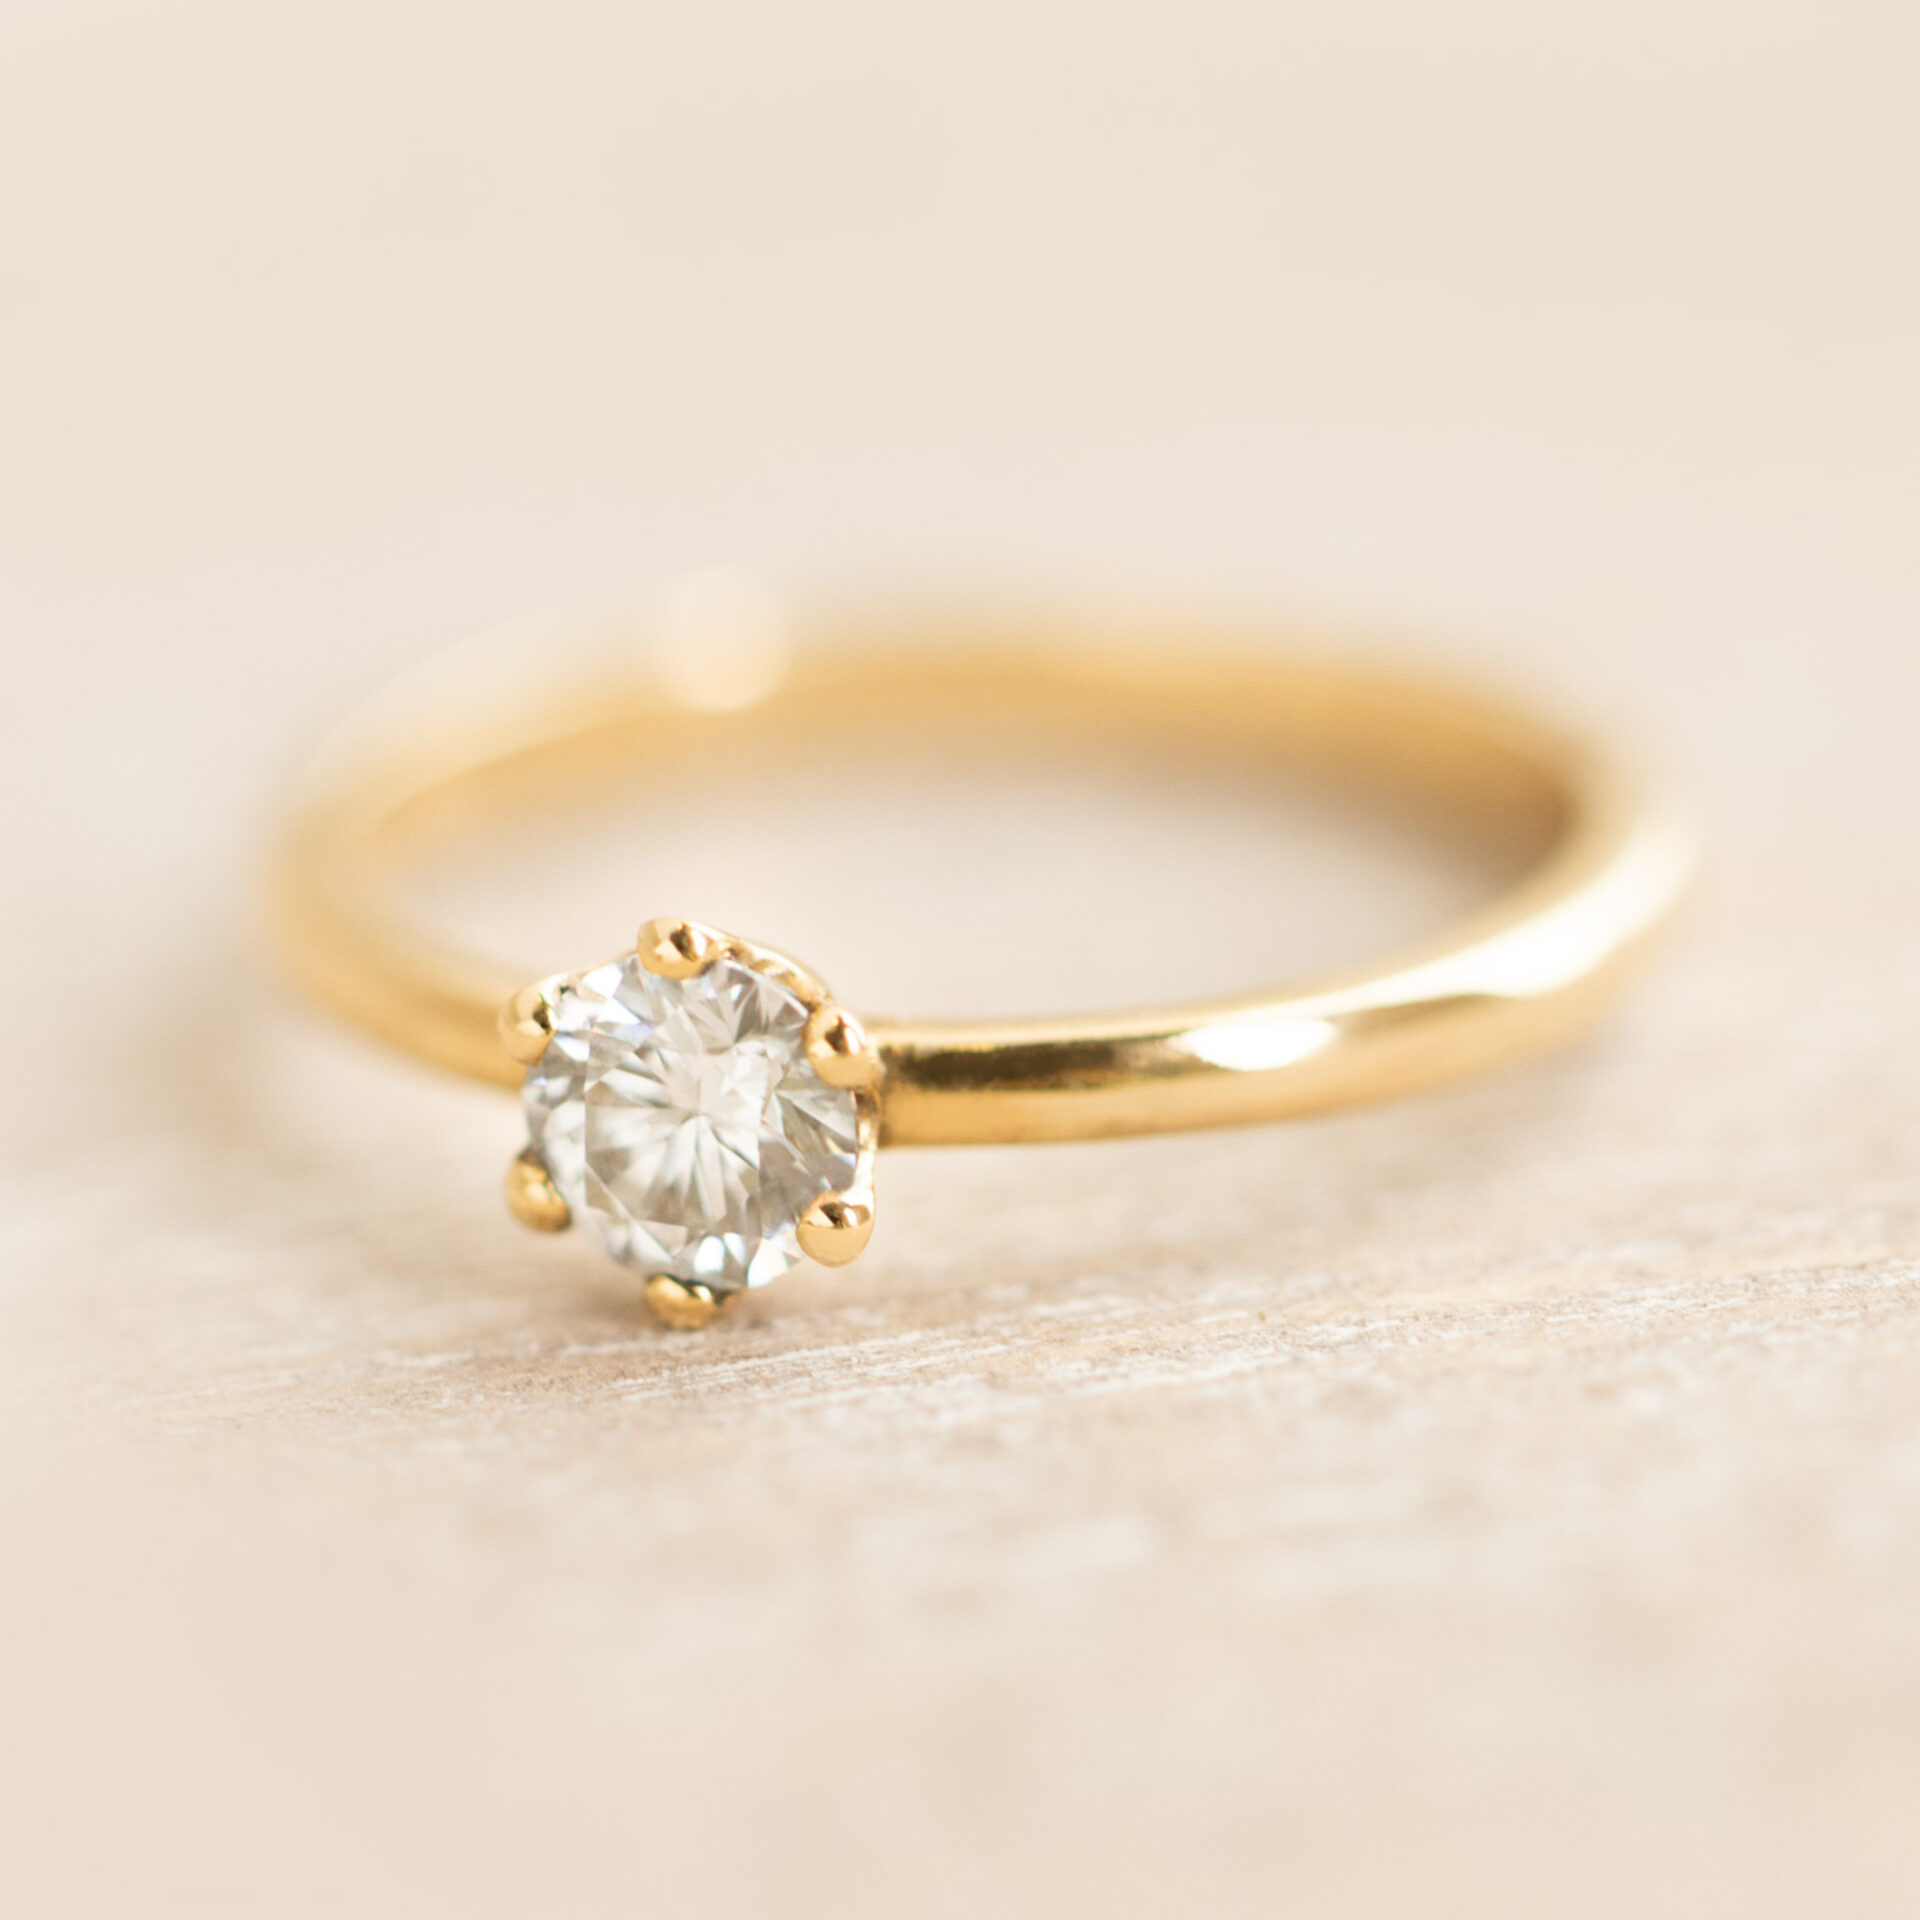 Verlobungsring mit weissem Diamant Schweiz Oekogold 750